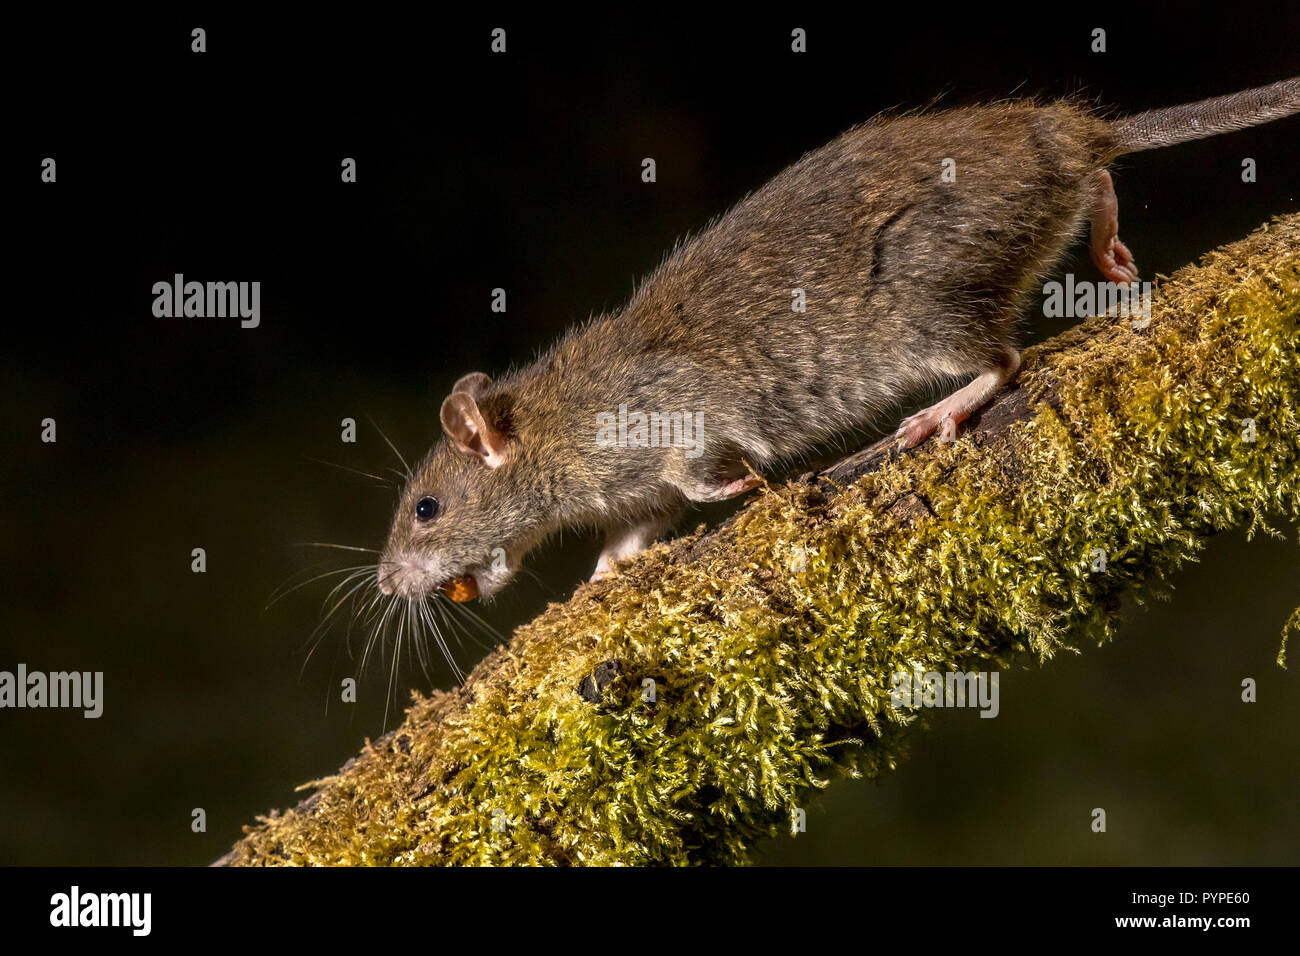 Wild marrone (ratto Rattus norvegicus) in esecuzione sul registro con dado rubato di notte. Fotografie ad alta velocità immagine Foto Stock